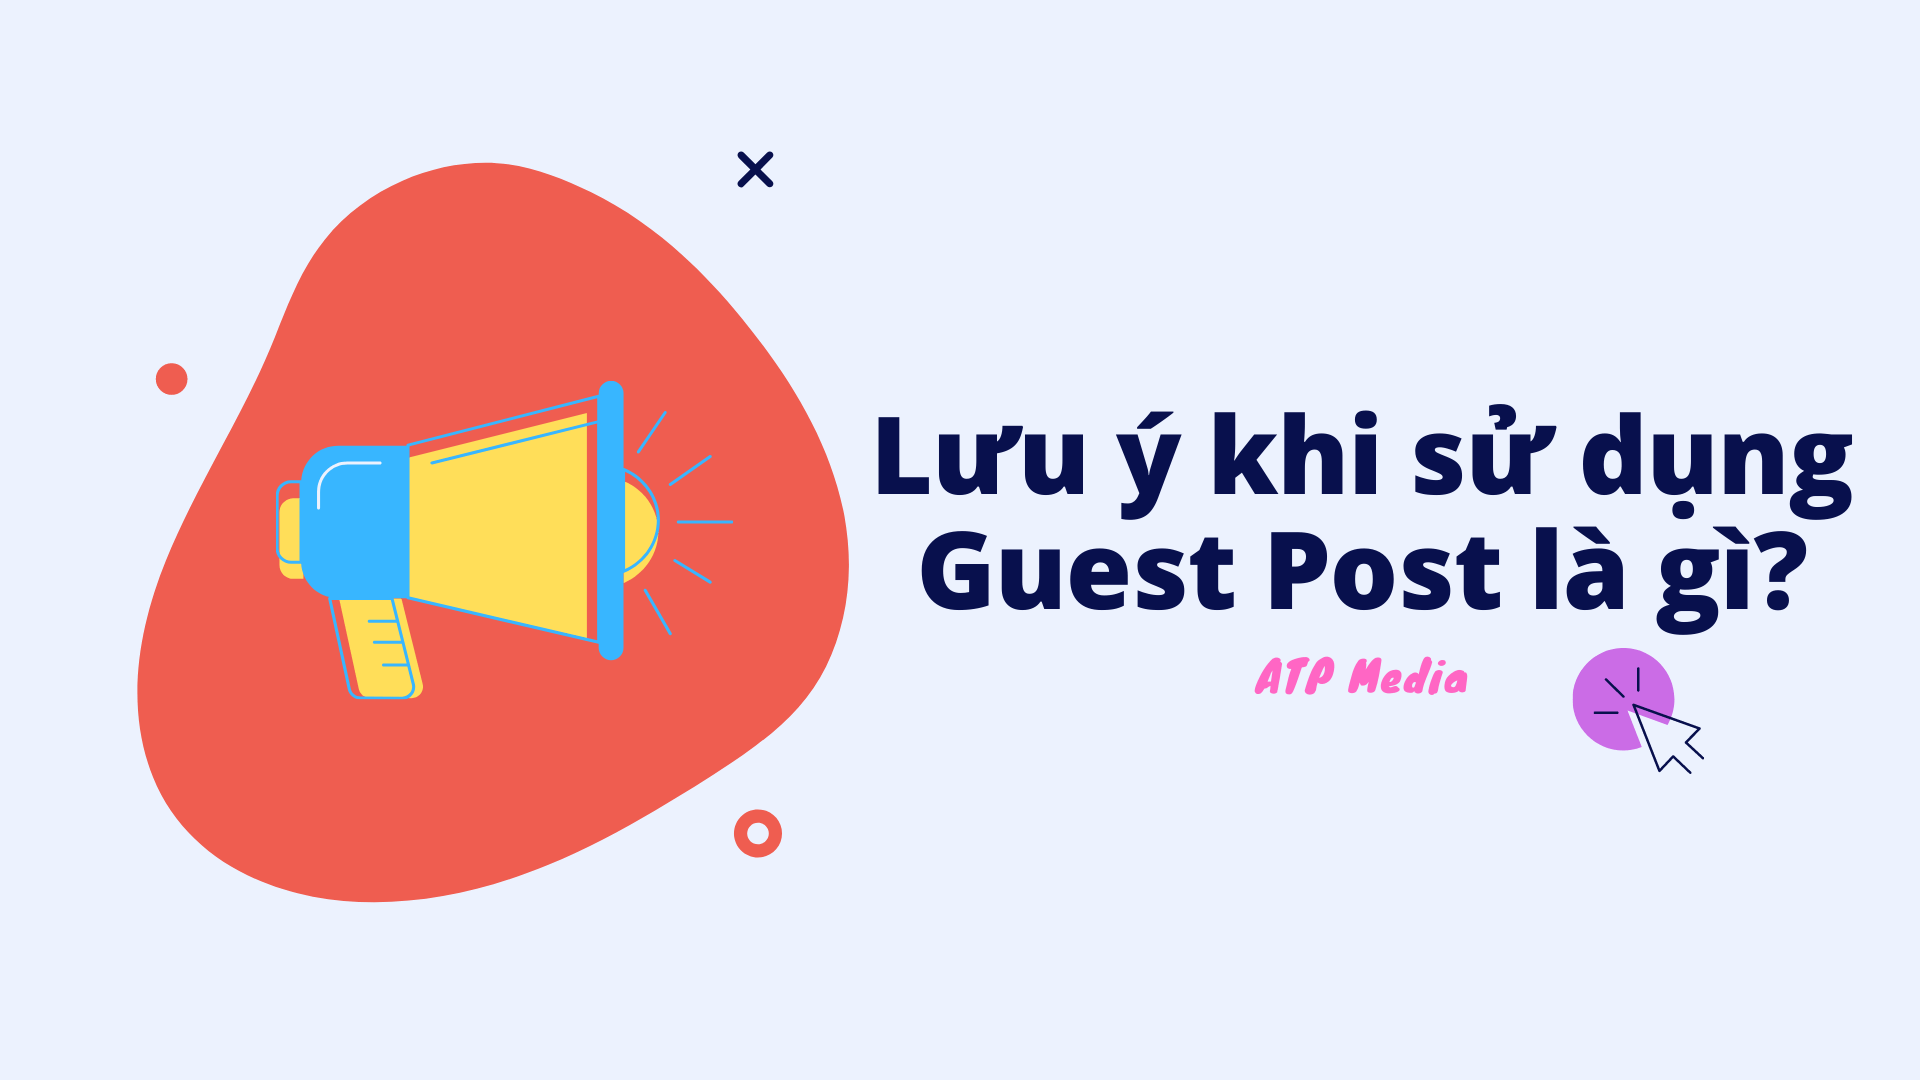 Lưu ý khi sử dụng Guest Post là gì?